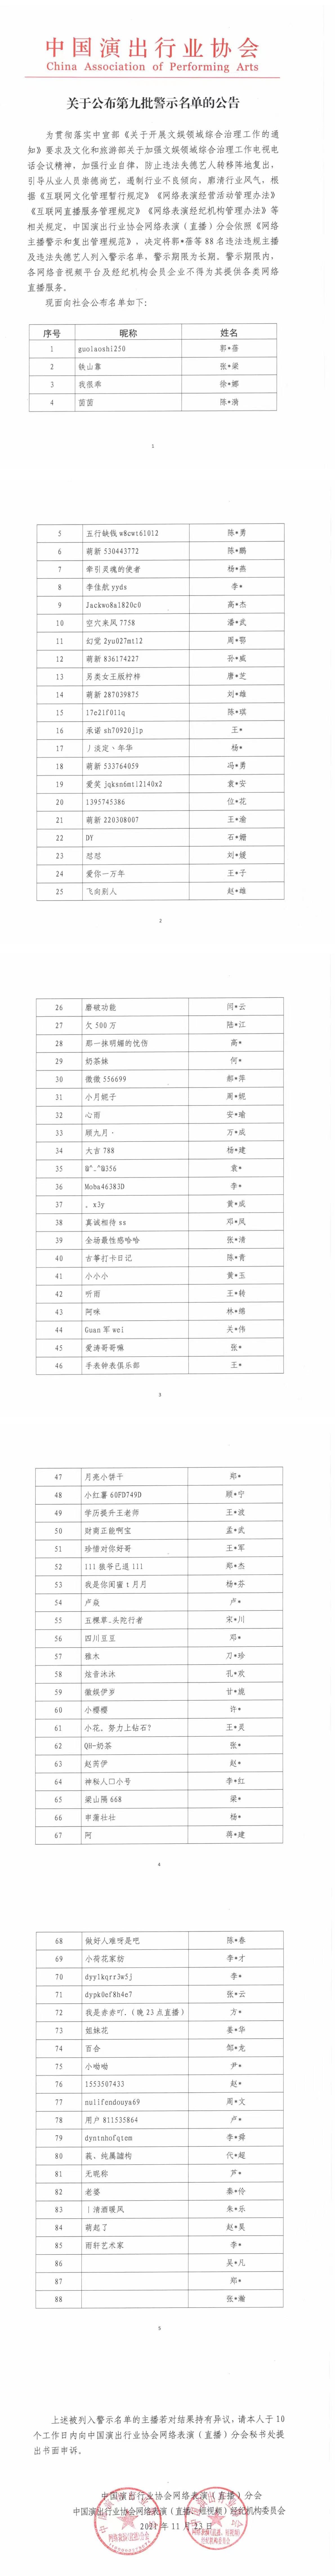 “中演协公布第九批网络主播警示名单 首次纳入违法失德艺人